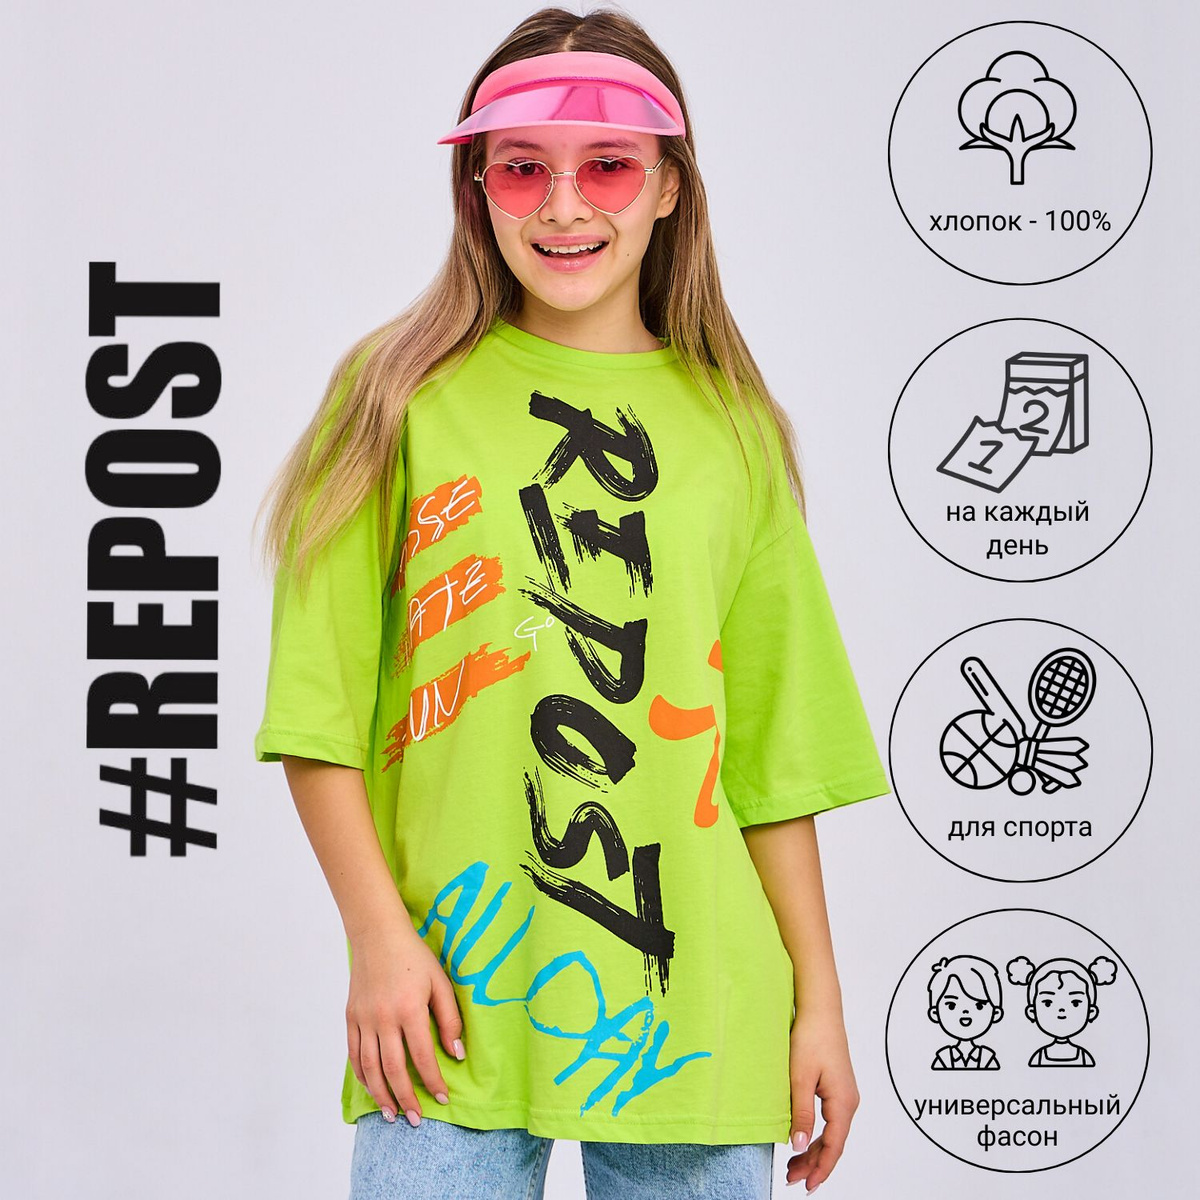 Детская футболка оверсайз Бренд #Repost – одежда для детей и подростков. Стильная и модная футболка оверсайз универсального фасона, подходит для мальчиков и девочек. Футболки оверсайз свободного кроя идеальны для школы, на физкультуру, для прогулок и на каждый день. Выполненная из качественного трикотажа - 100% натурального хлопка, оверсайз футболка приятна к телу, мягкая ткань премиум качества позволяет коже ребенка дышать. Особенностью этой модели (футболка Оверсайз) является её универсальность - она подходит как для девочек, так и для мальчиков. Благодаря этому каждый ребенок сможет выбрать себе подходящий размер и цвет. Яркая футболка для девочки оверсайз украсит детский гардероб, стильный принт украшает футболки для мальчика и девочки, футболка для подростка удобна и практична.  На модели – размер 158. Параметры – рост 157 см, грудь – 76 см, талия – 63, бедра – 86.